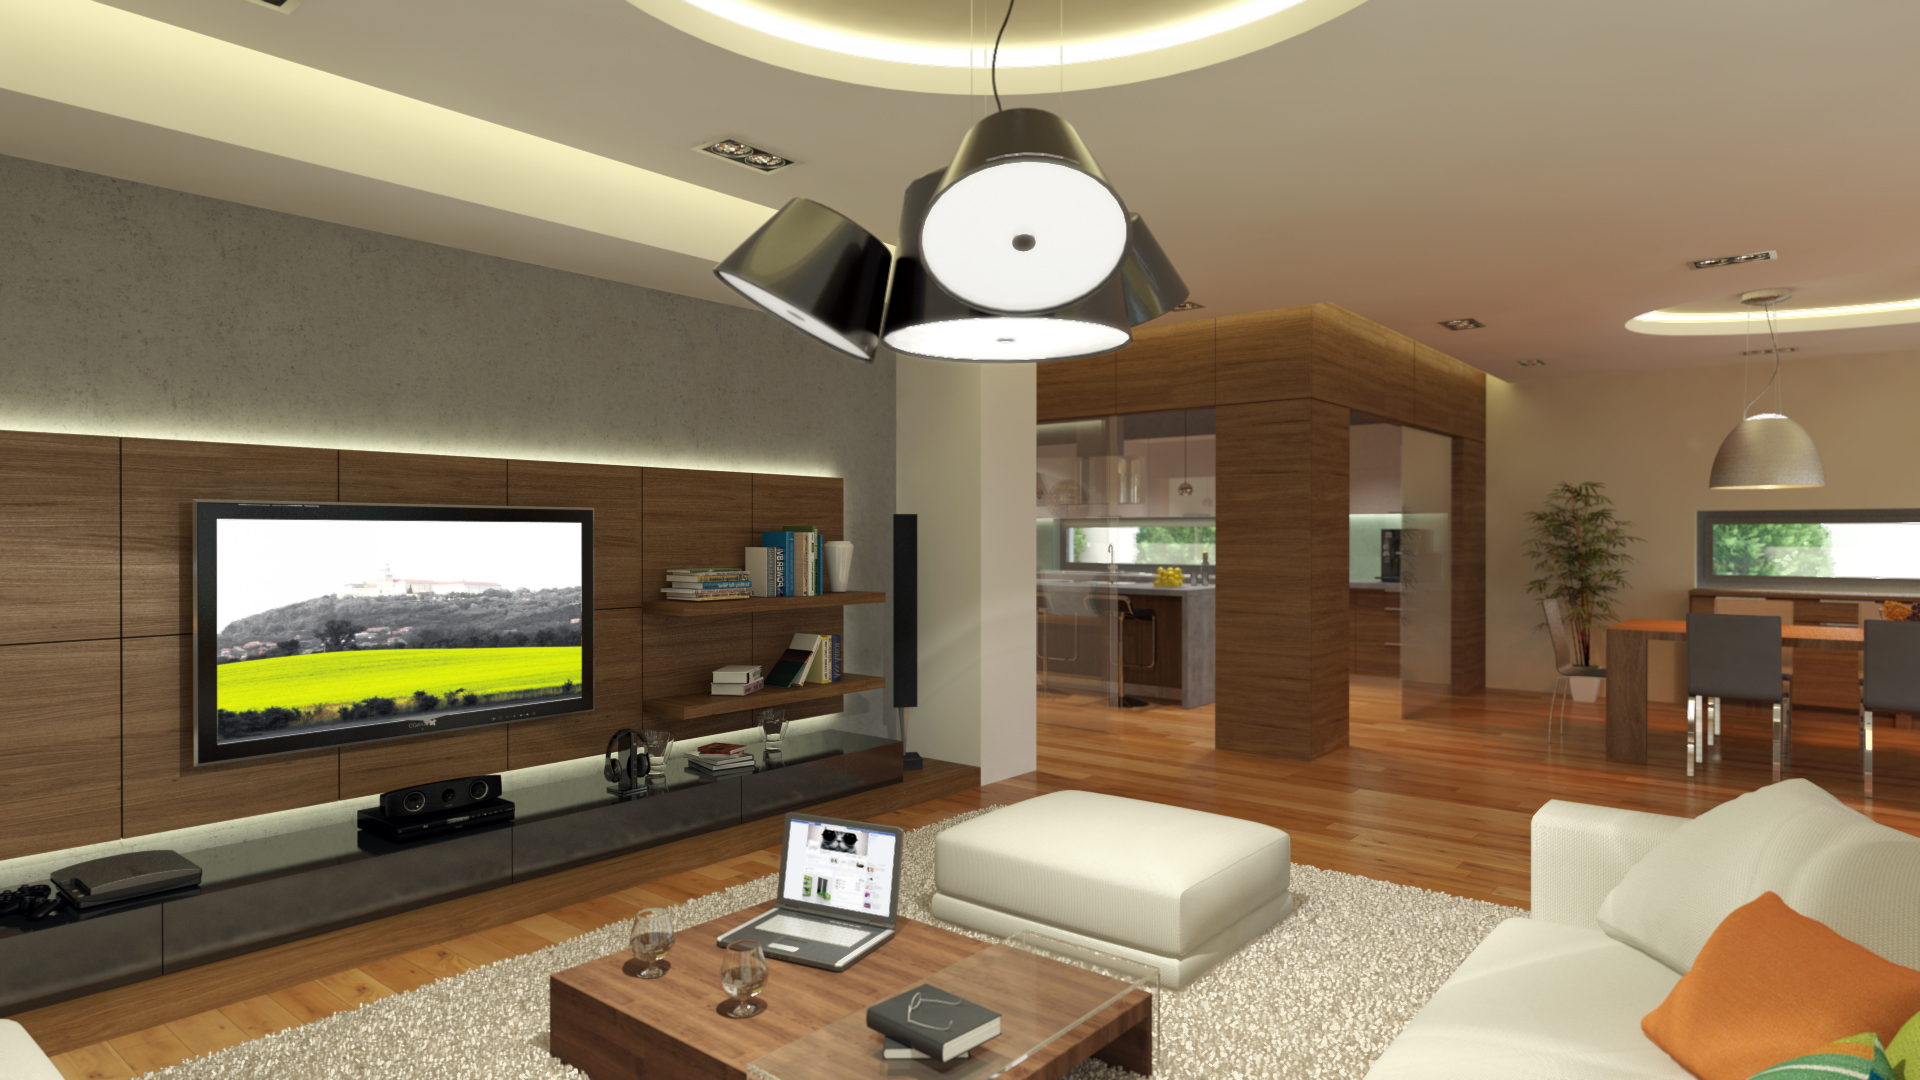 Nappali - látványterv / Living room - architectural visualization